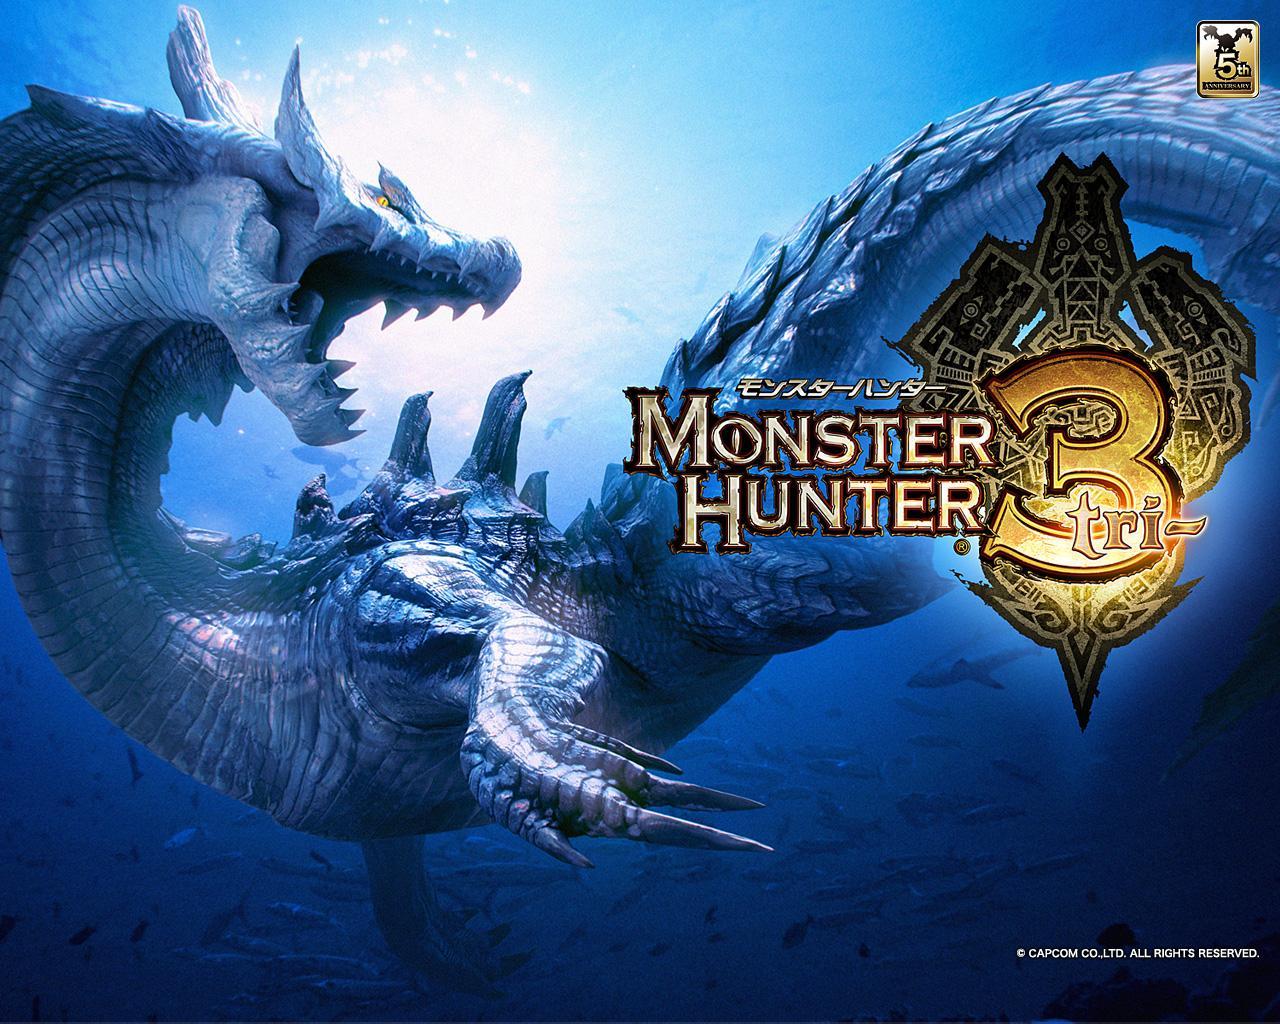 Monster Hunter Tri for 3ds 